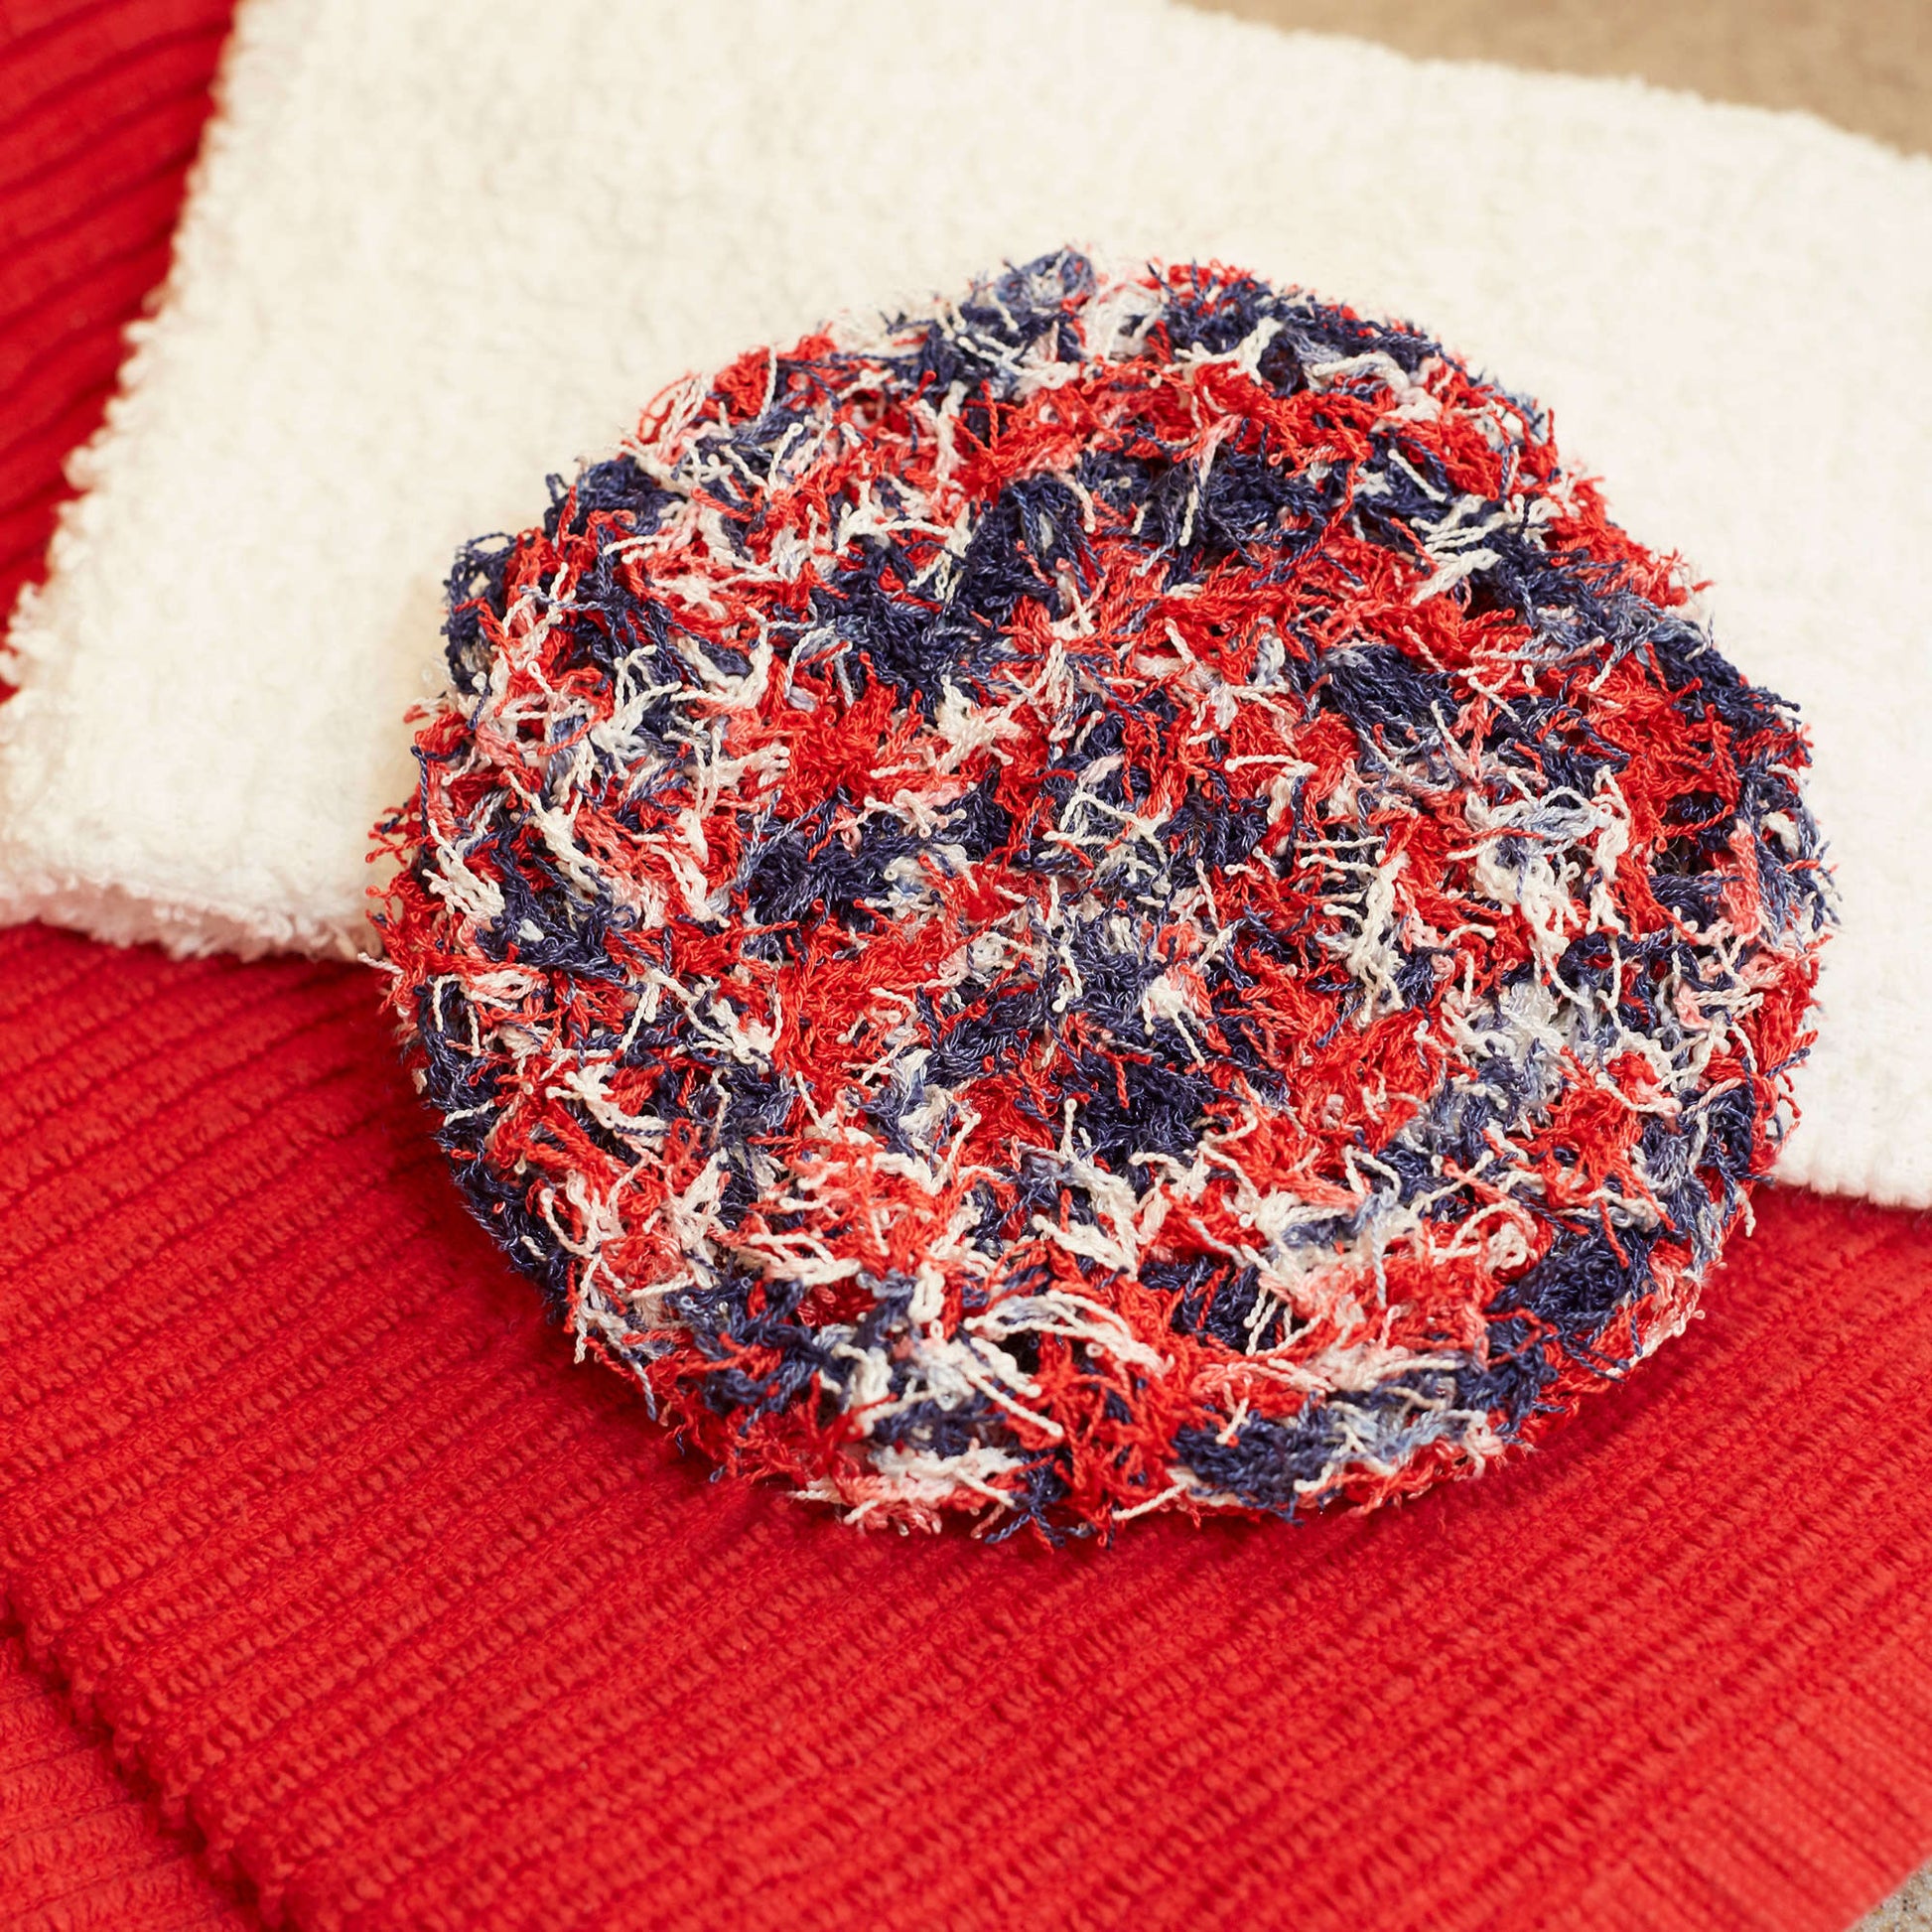 Free Red Heart Swirl Scrubby Crochet Pattern